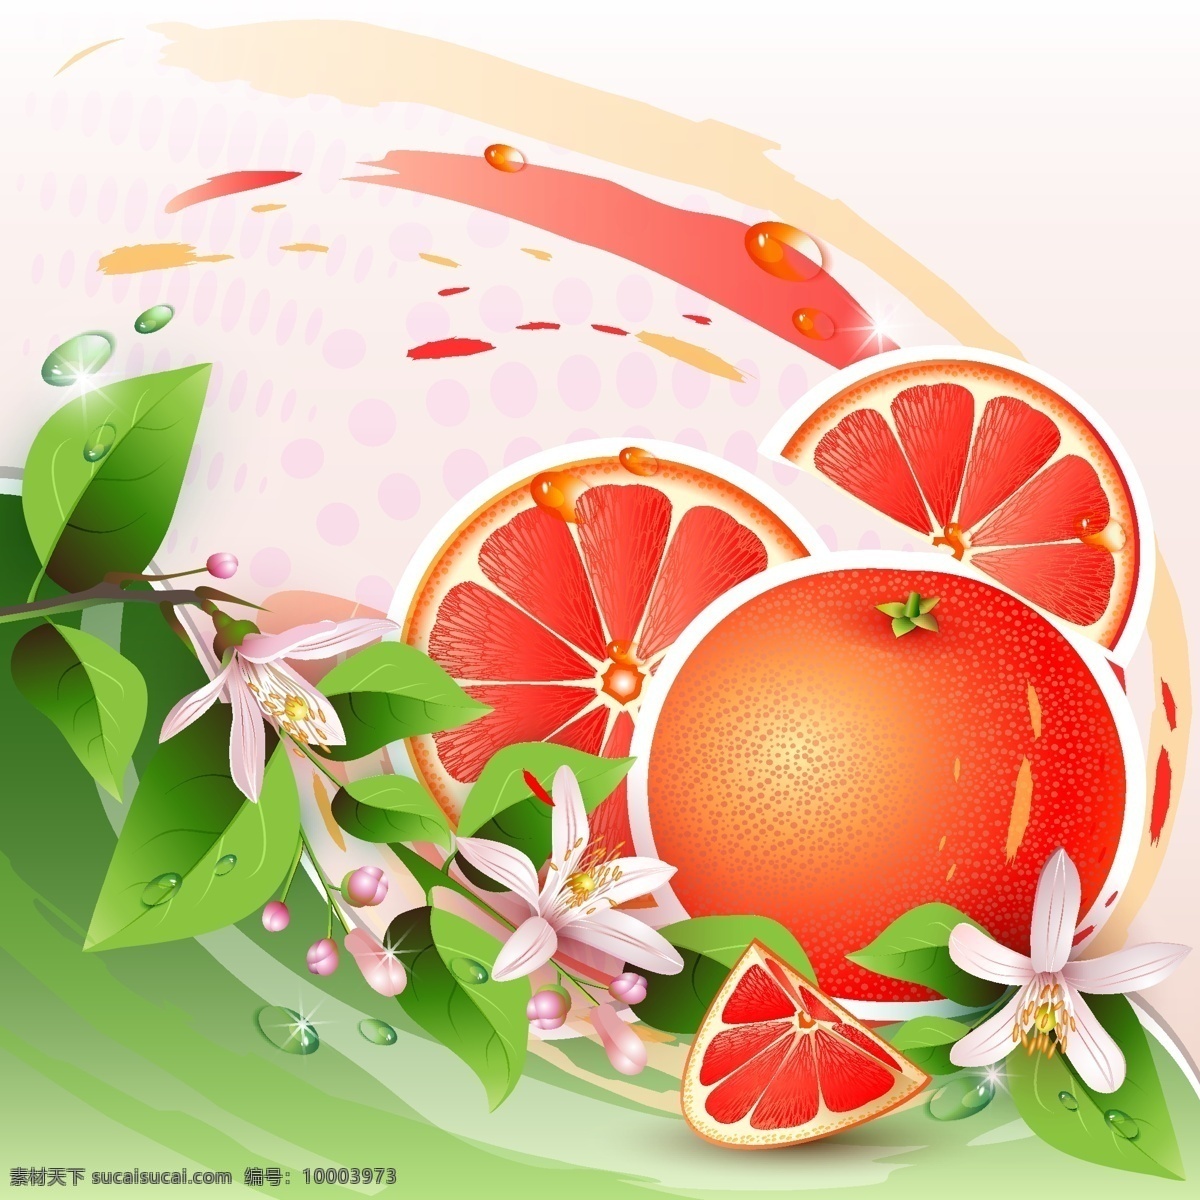 卡通橙子 橙子 卡通 血橙 花草 矢量素材 水果 生活百科